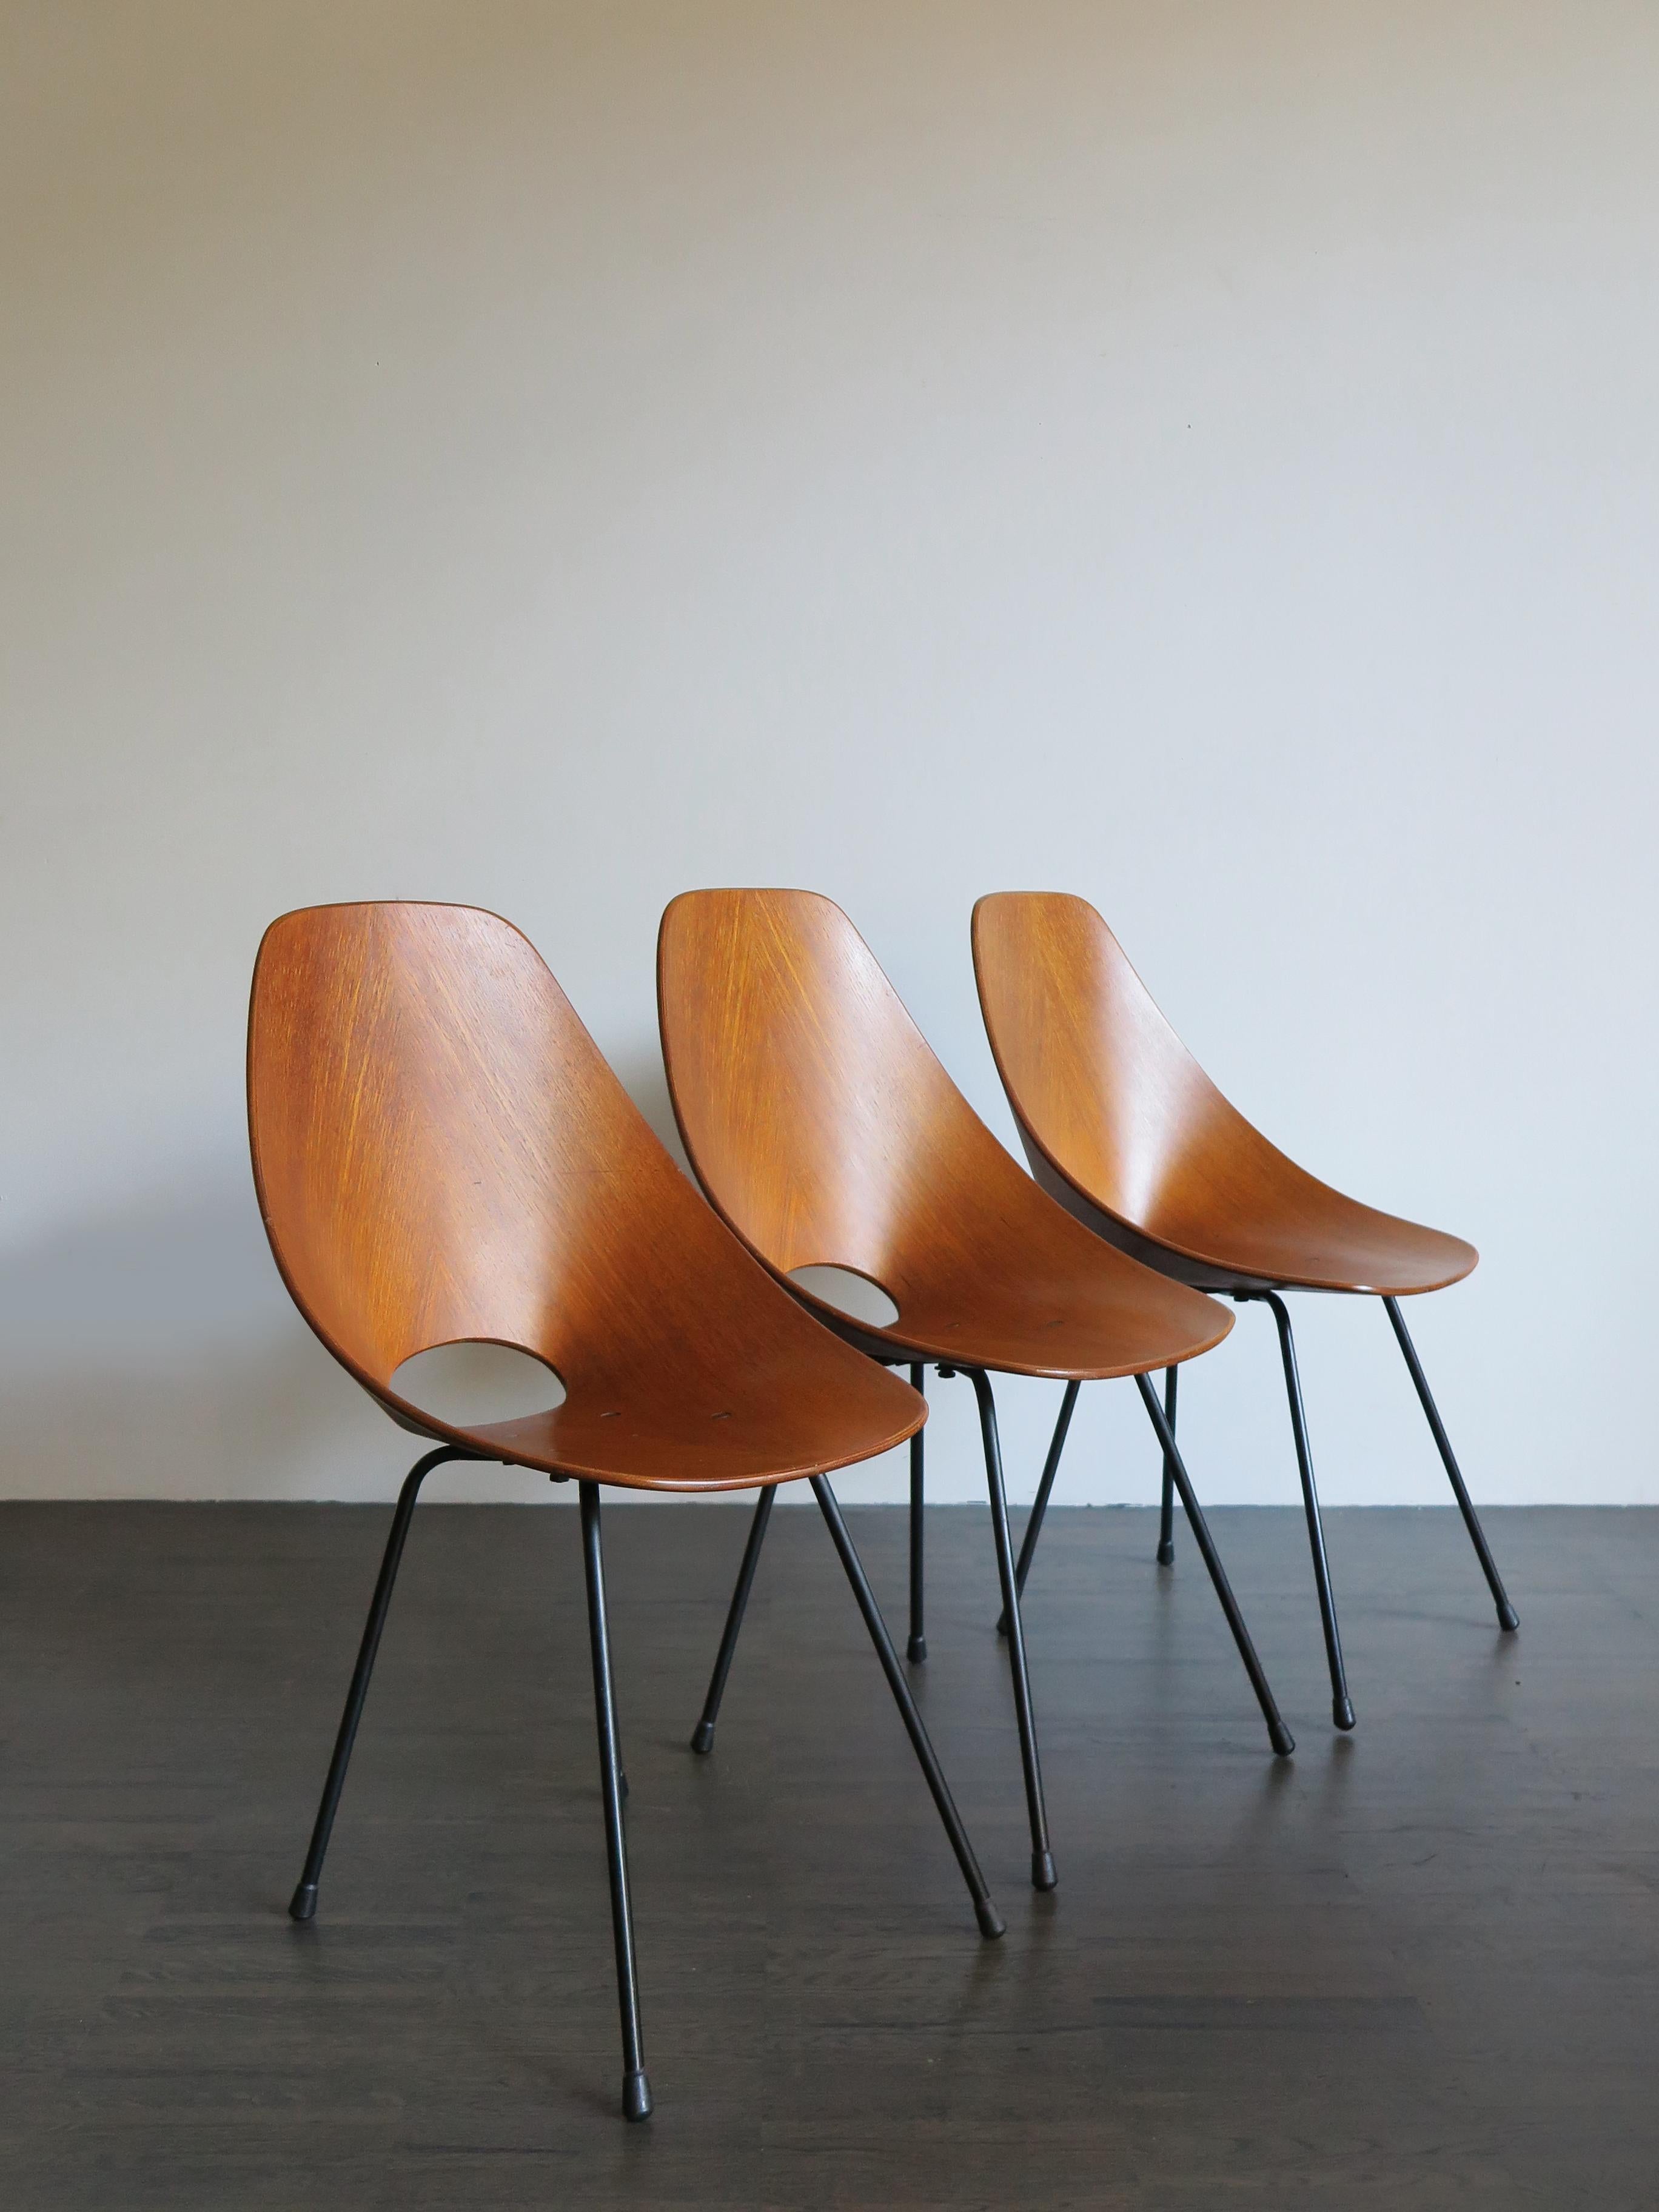 Ensemble de trois chaises de salle à manger italiennes du milieu du siècle dernier, modèle Medea, conçu par Vittorio Nobilis et produit par Fratelli Tagliabue, contreplaqué plaqué, métal laqué, cette chaise a remporté le prestigieux prix 